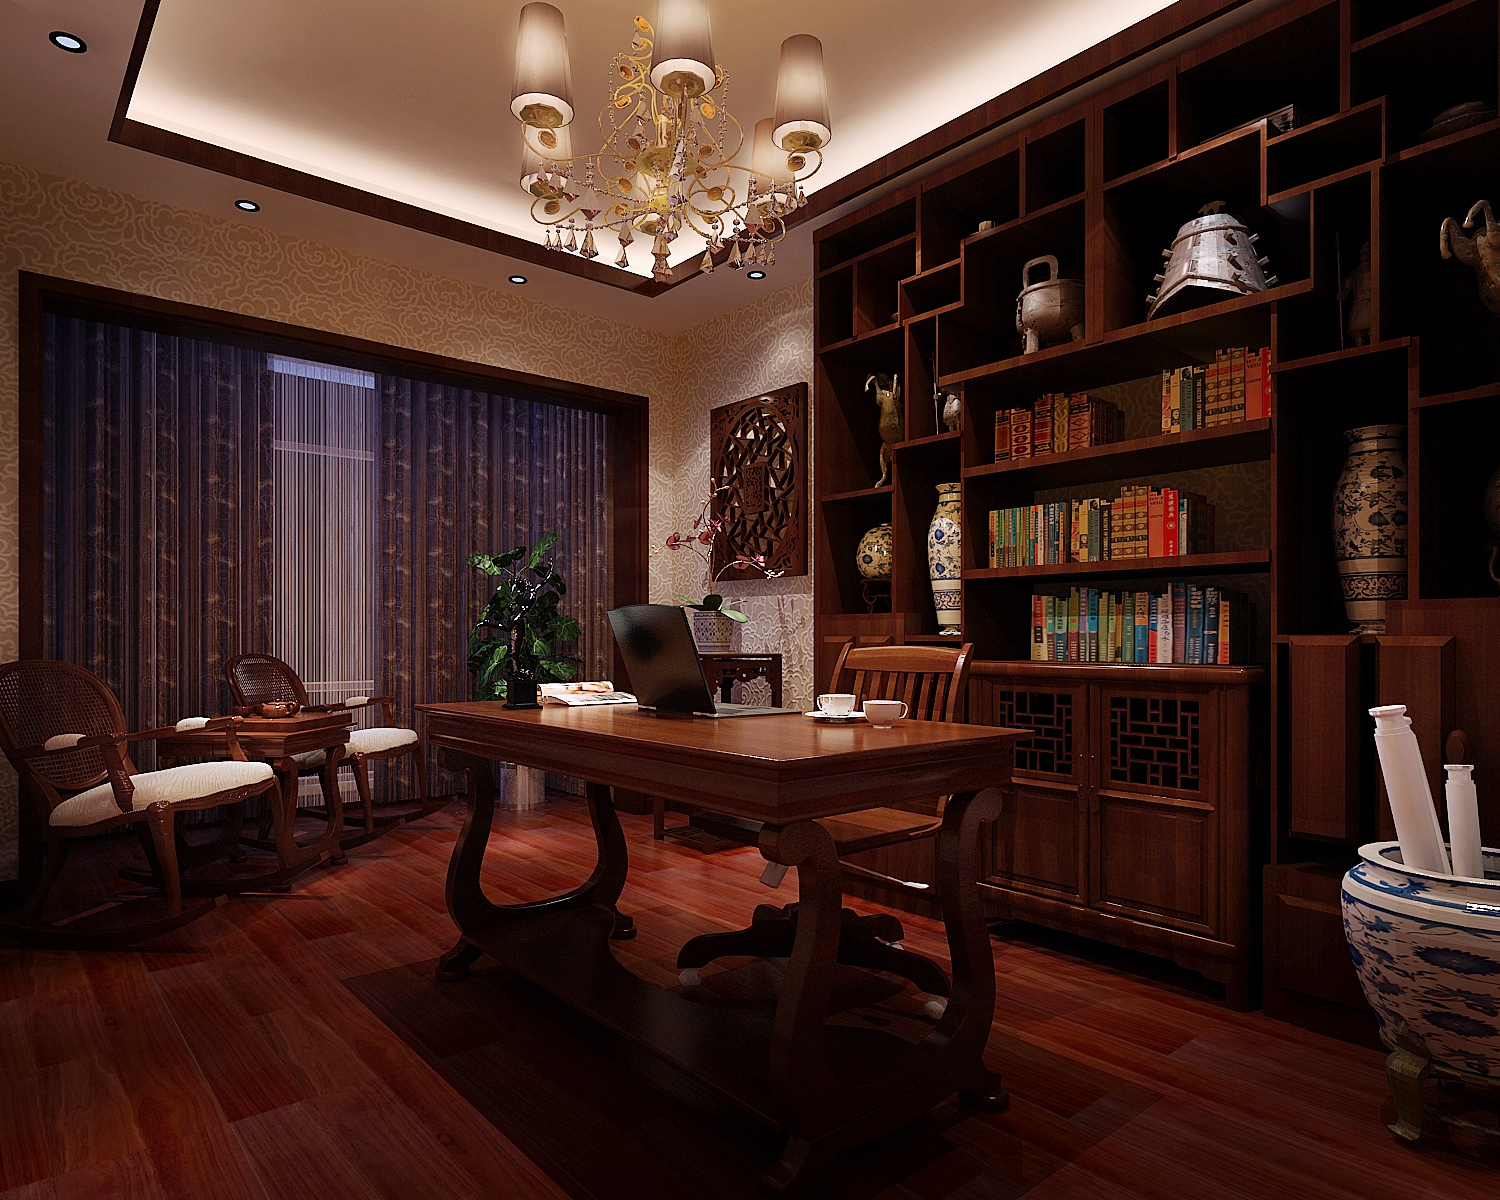 中式 三居 书房 书房图片来自成都幸福魔方装饰工程有限公司在彰显华夏千年文化辉煌的分享